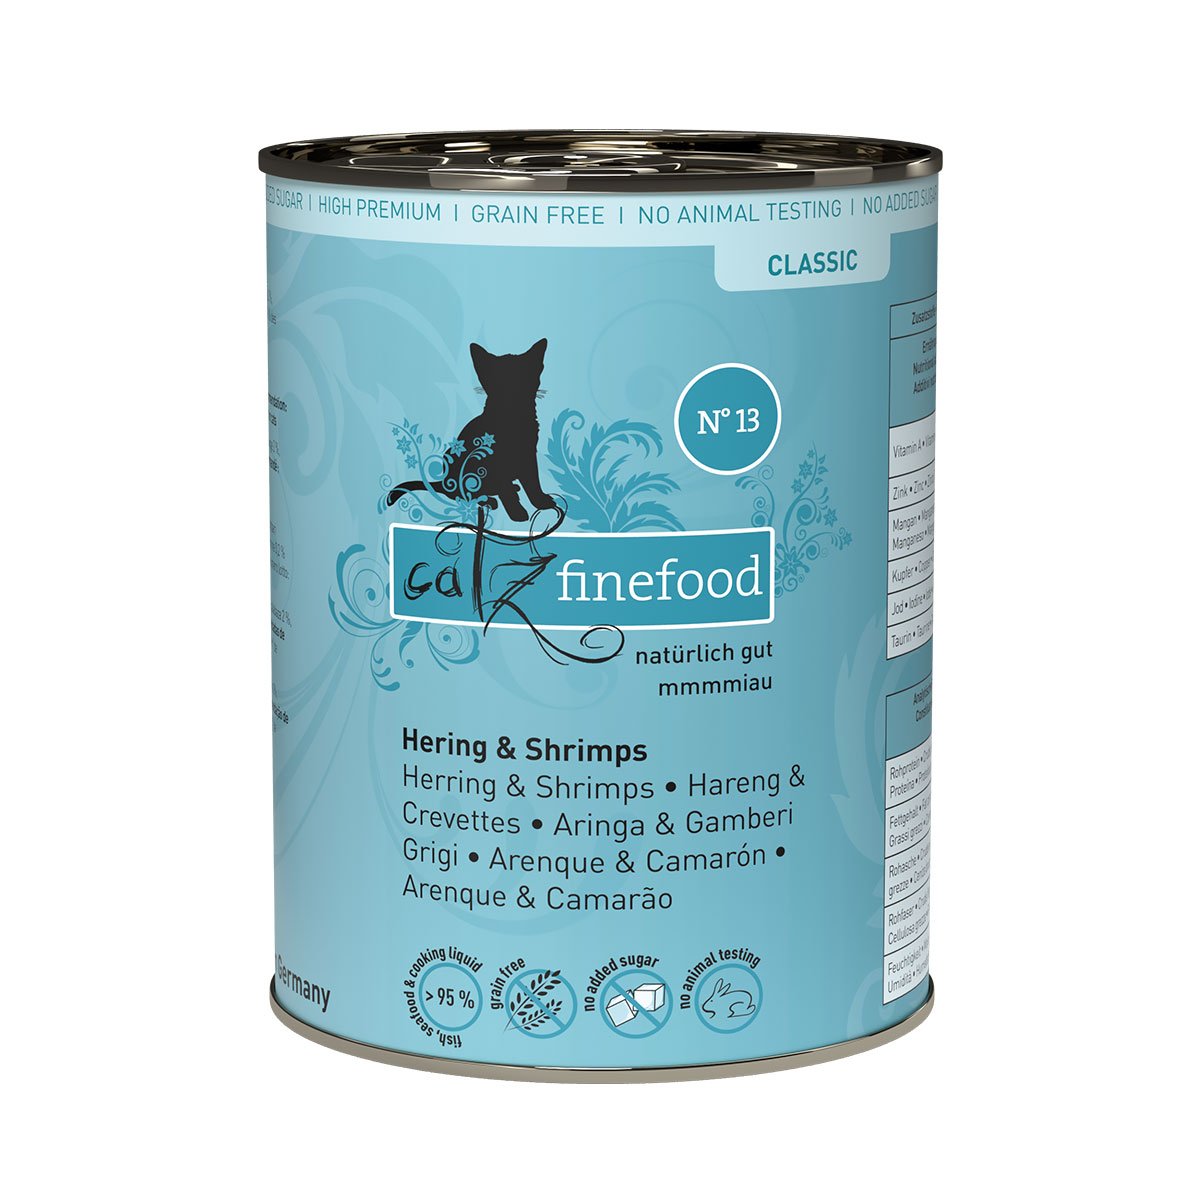 Catz Finefood Classic N° 13 - Hering & Shrimps 6x400g von Catz Finefood